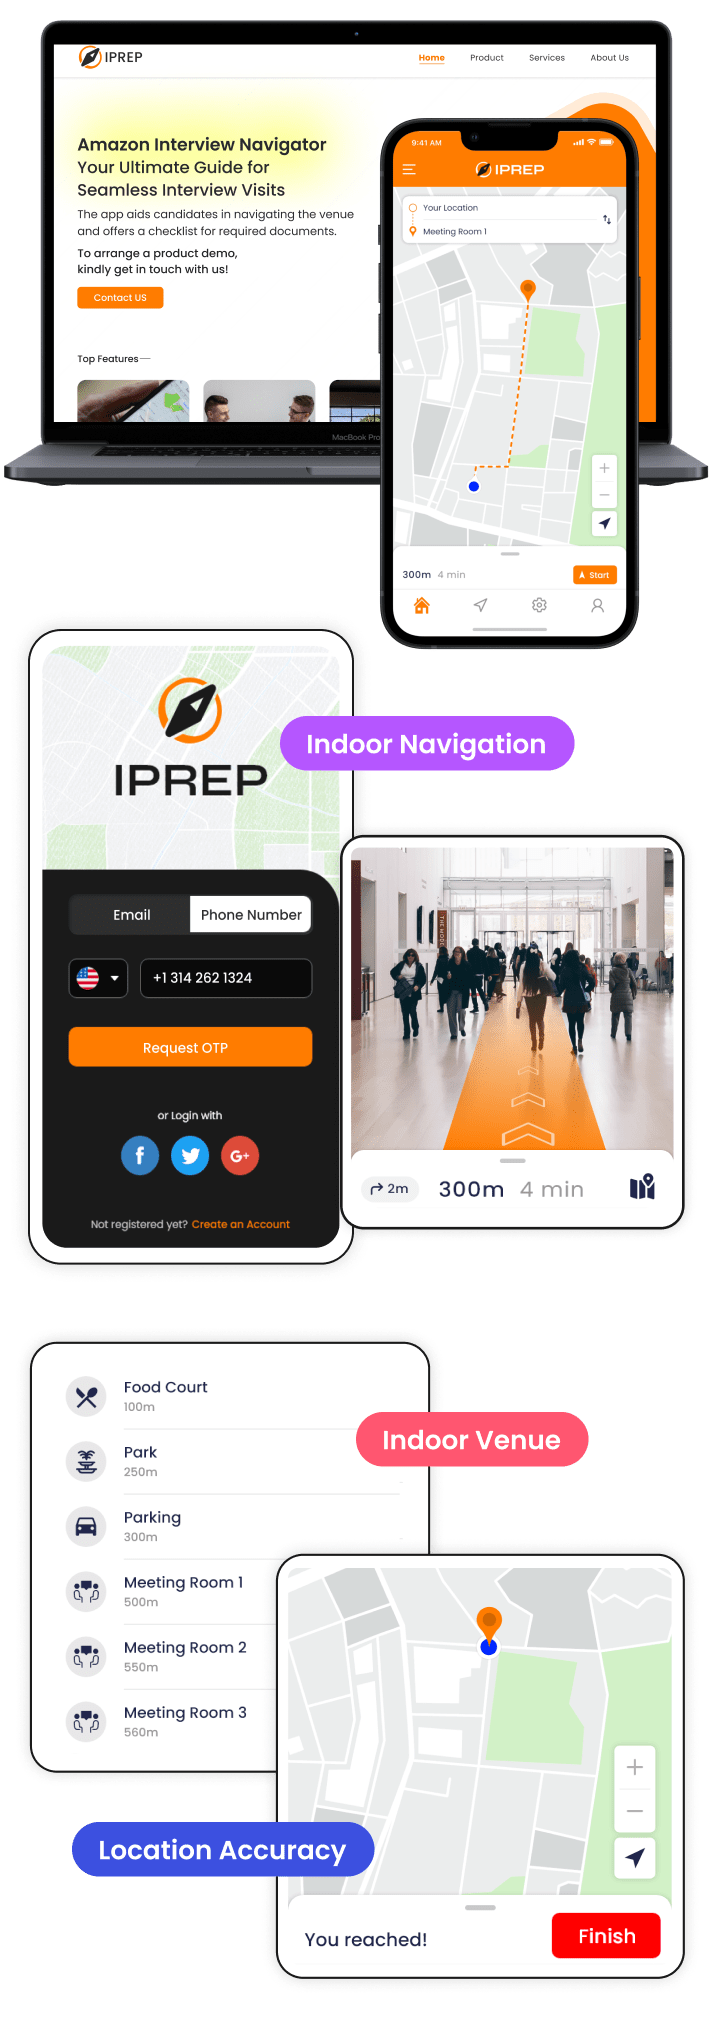 Iprep overview